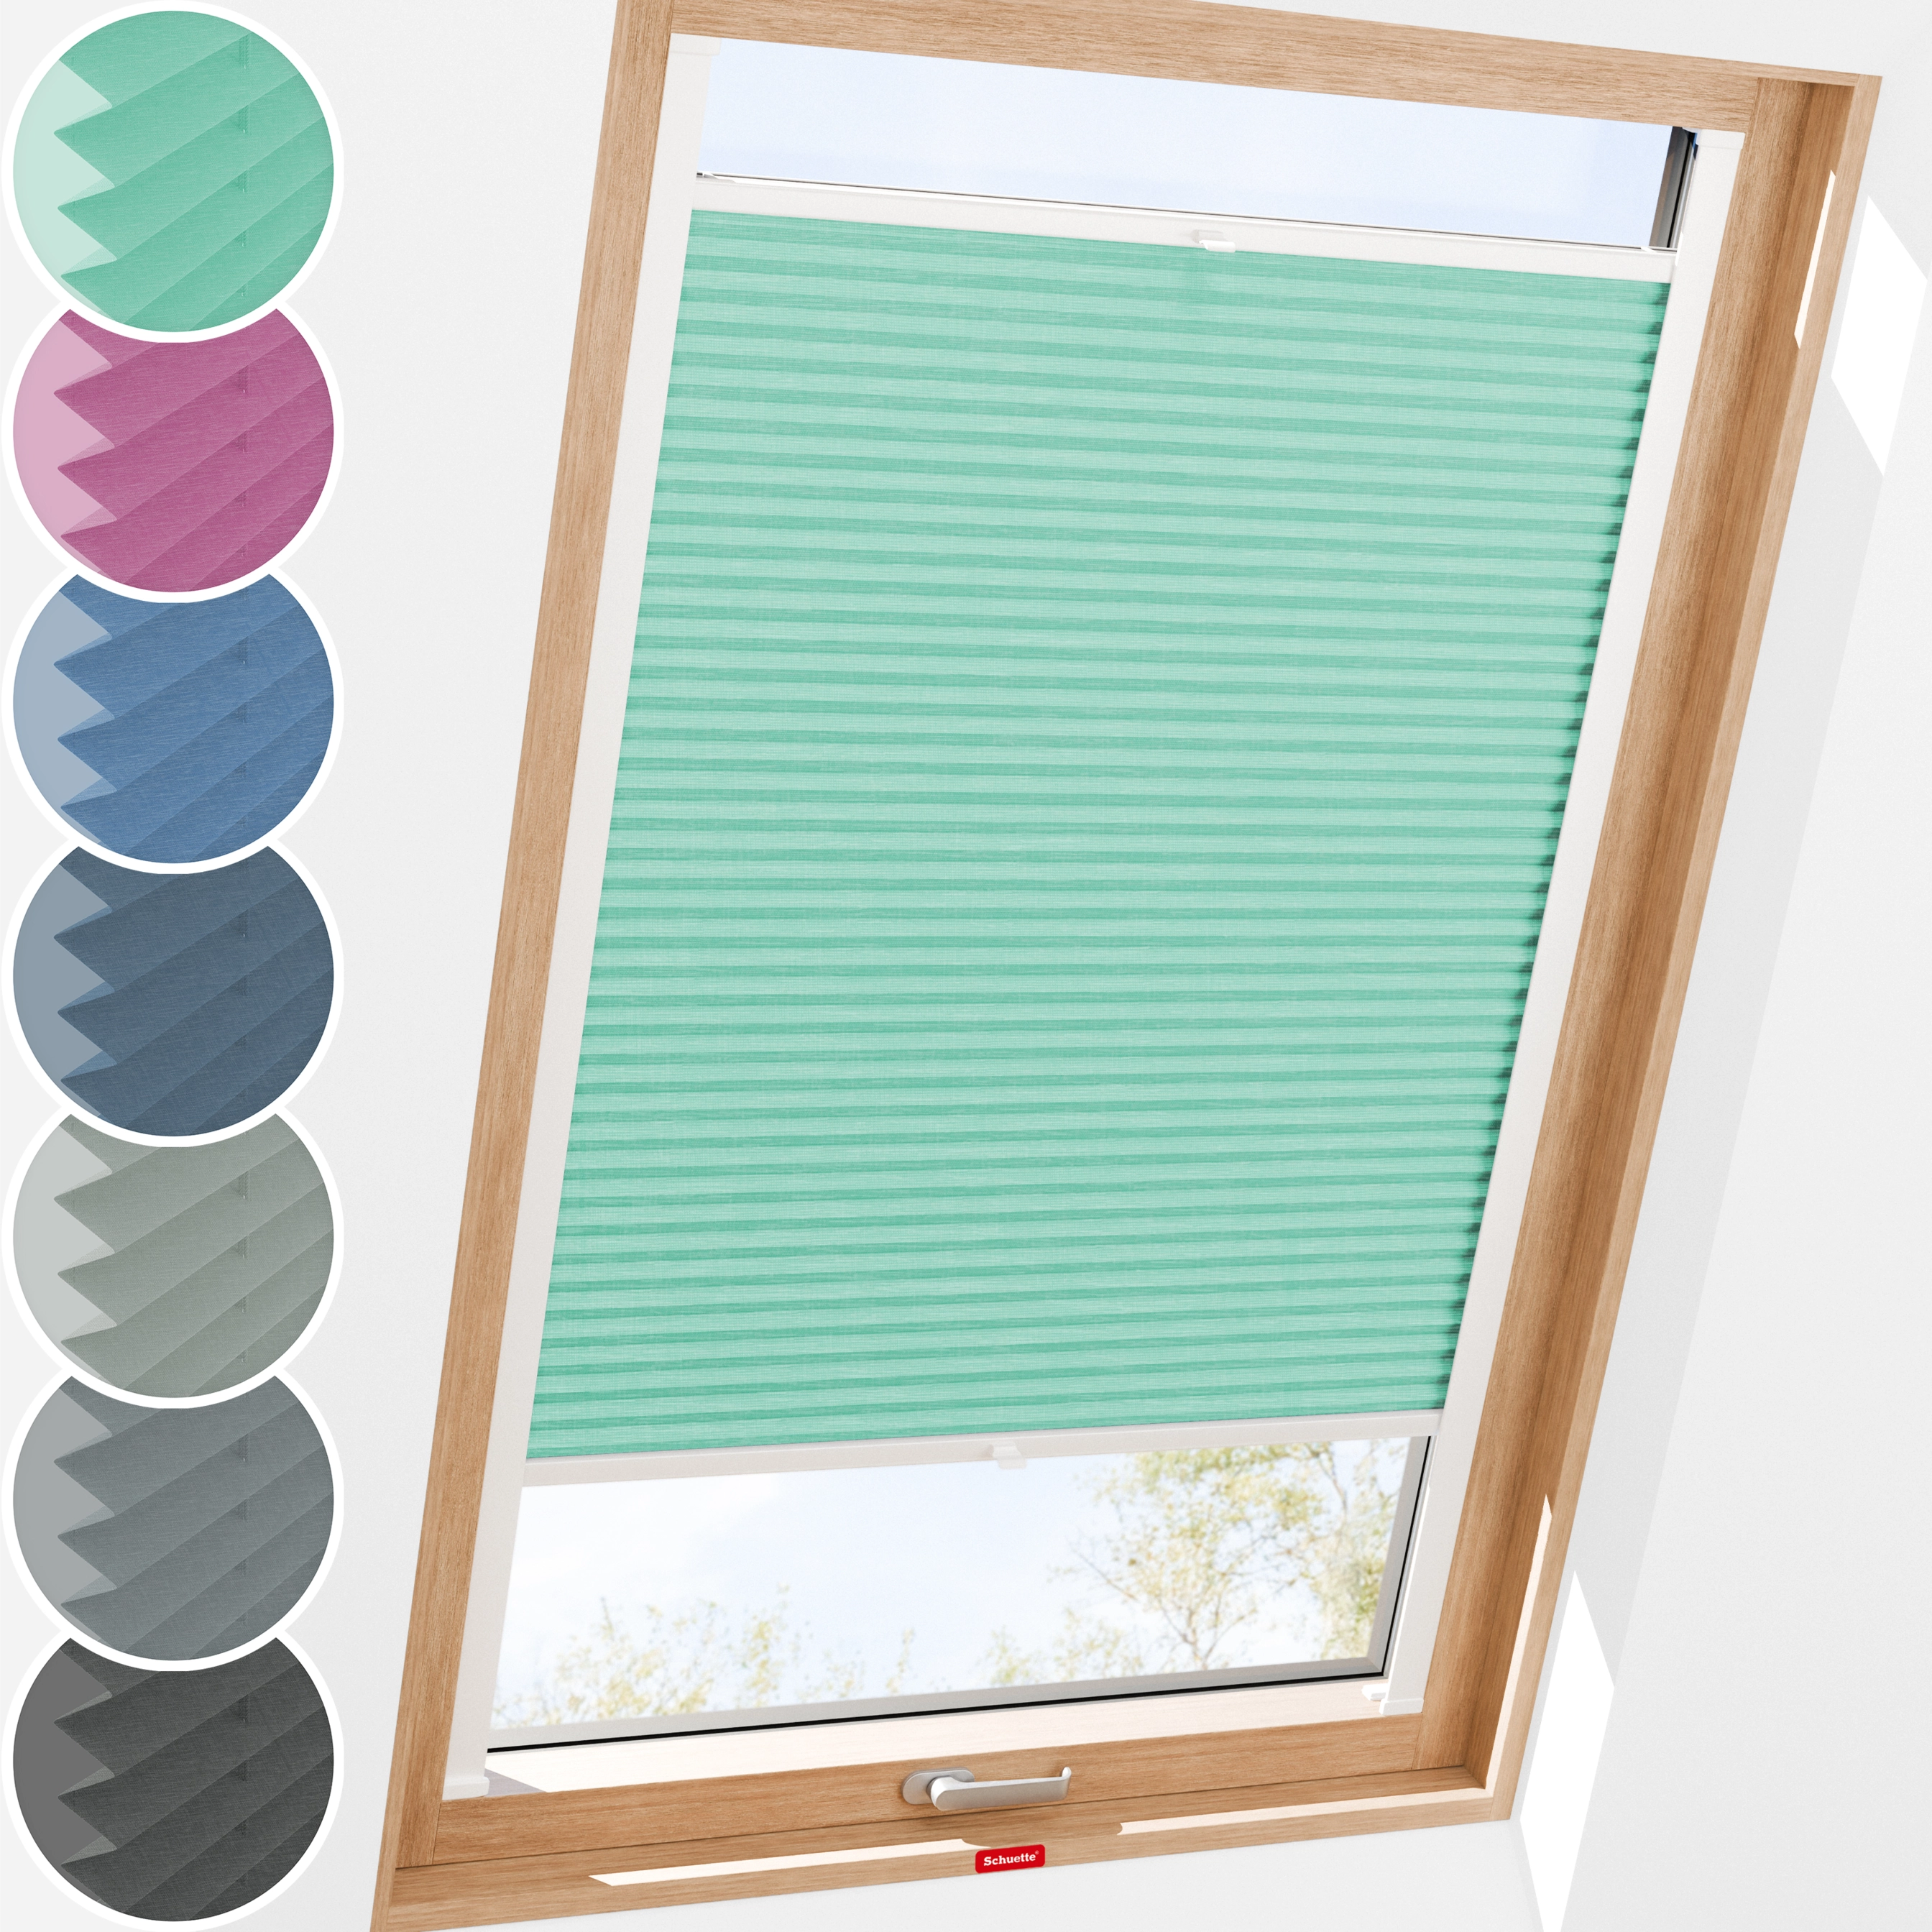 Schuette® Dachfenster Plissee nach Maß • Melange Kollektion: Mint Ice Cream (Grün) • Profilfarbe: Weiß